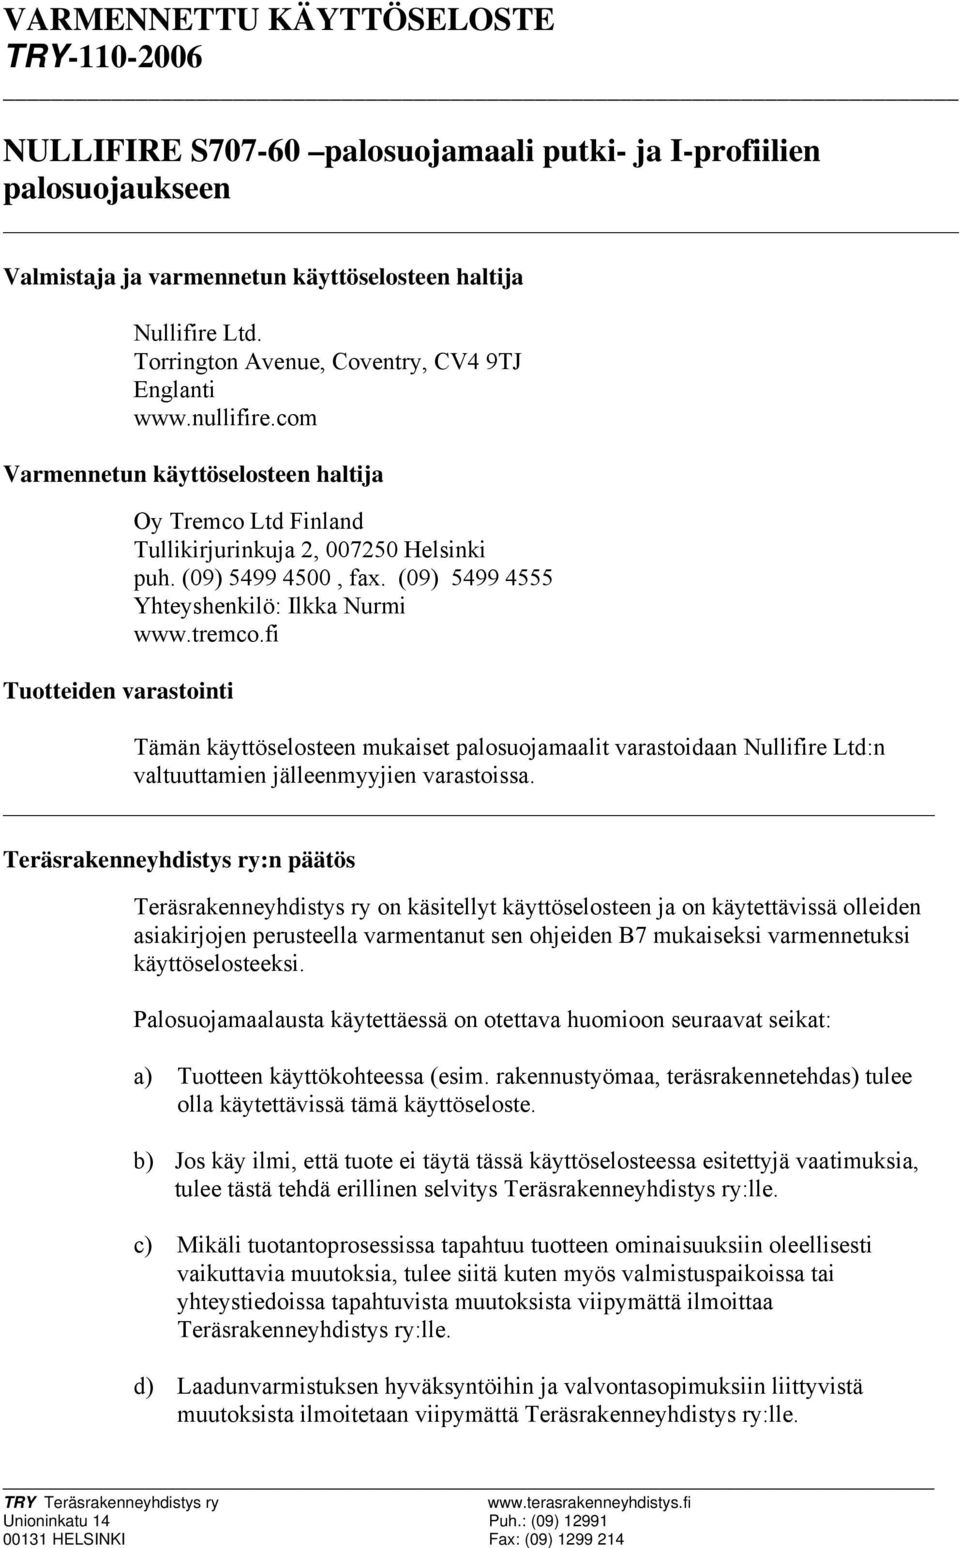 (09) 5499 4500, fax. (09) 5499 4555 Yhteyshenkilö: Ilkka Nurmi www.tremco.fi Tämän käyttöselosteen mukaiset palosuojamaalit varastoidaan Nullifire Ltd:n valtuuttamien jälleenmyyjien varastoissa.